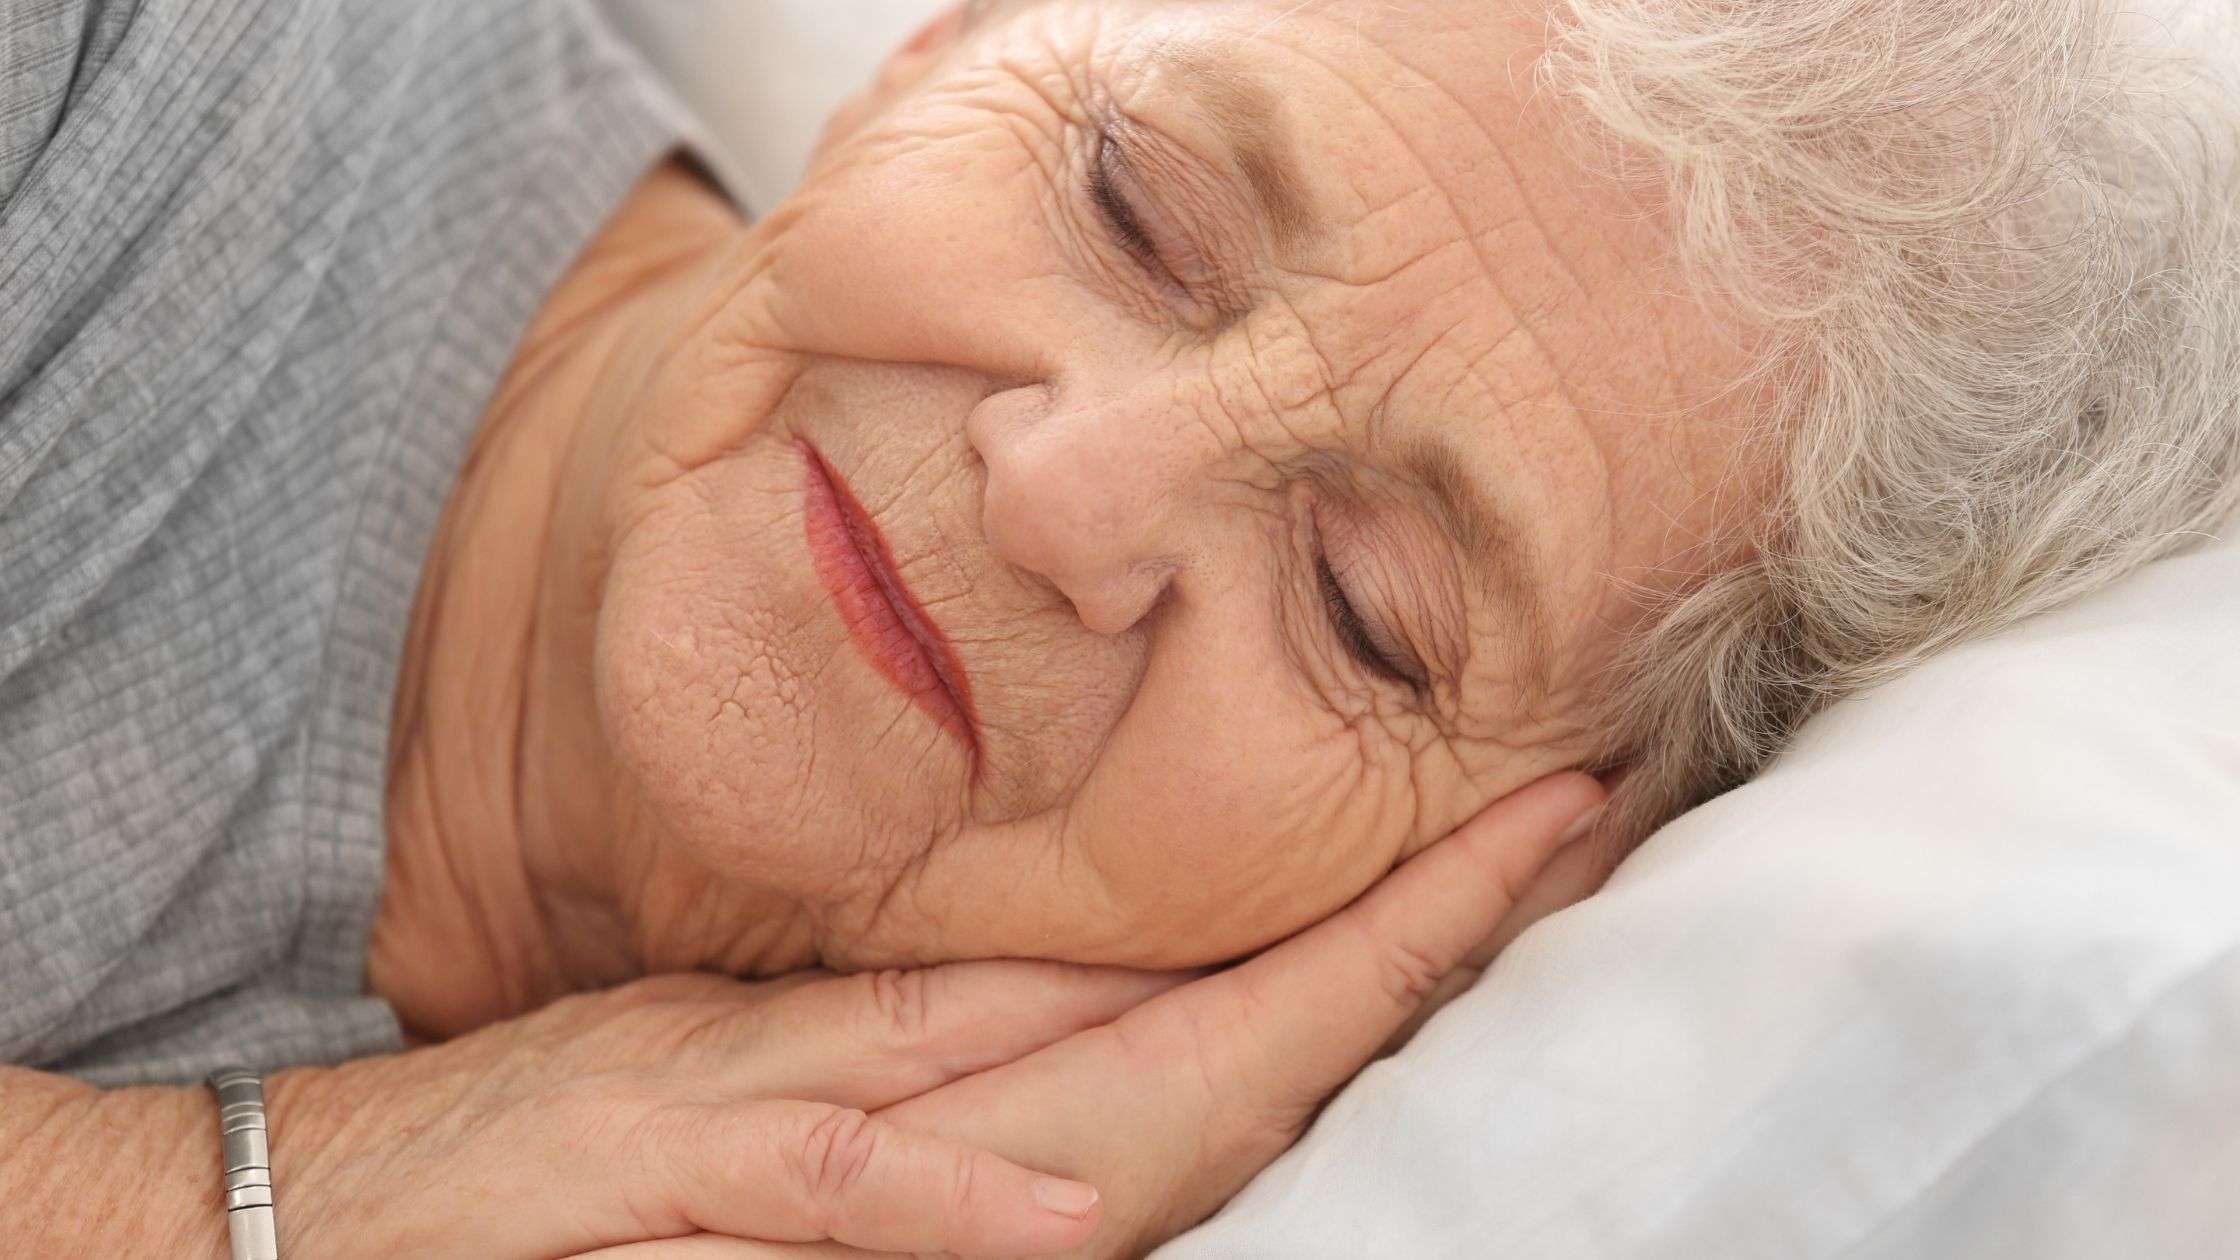 5 Best Bed Rails For Elderly